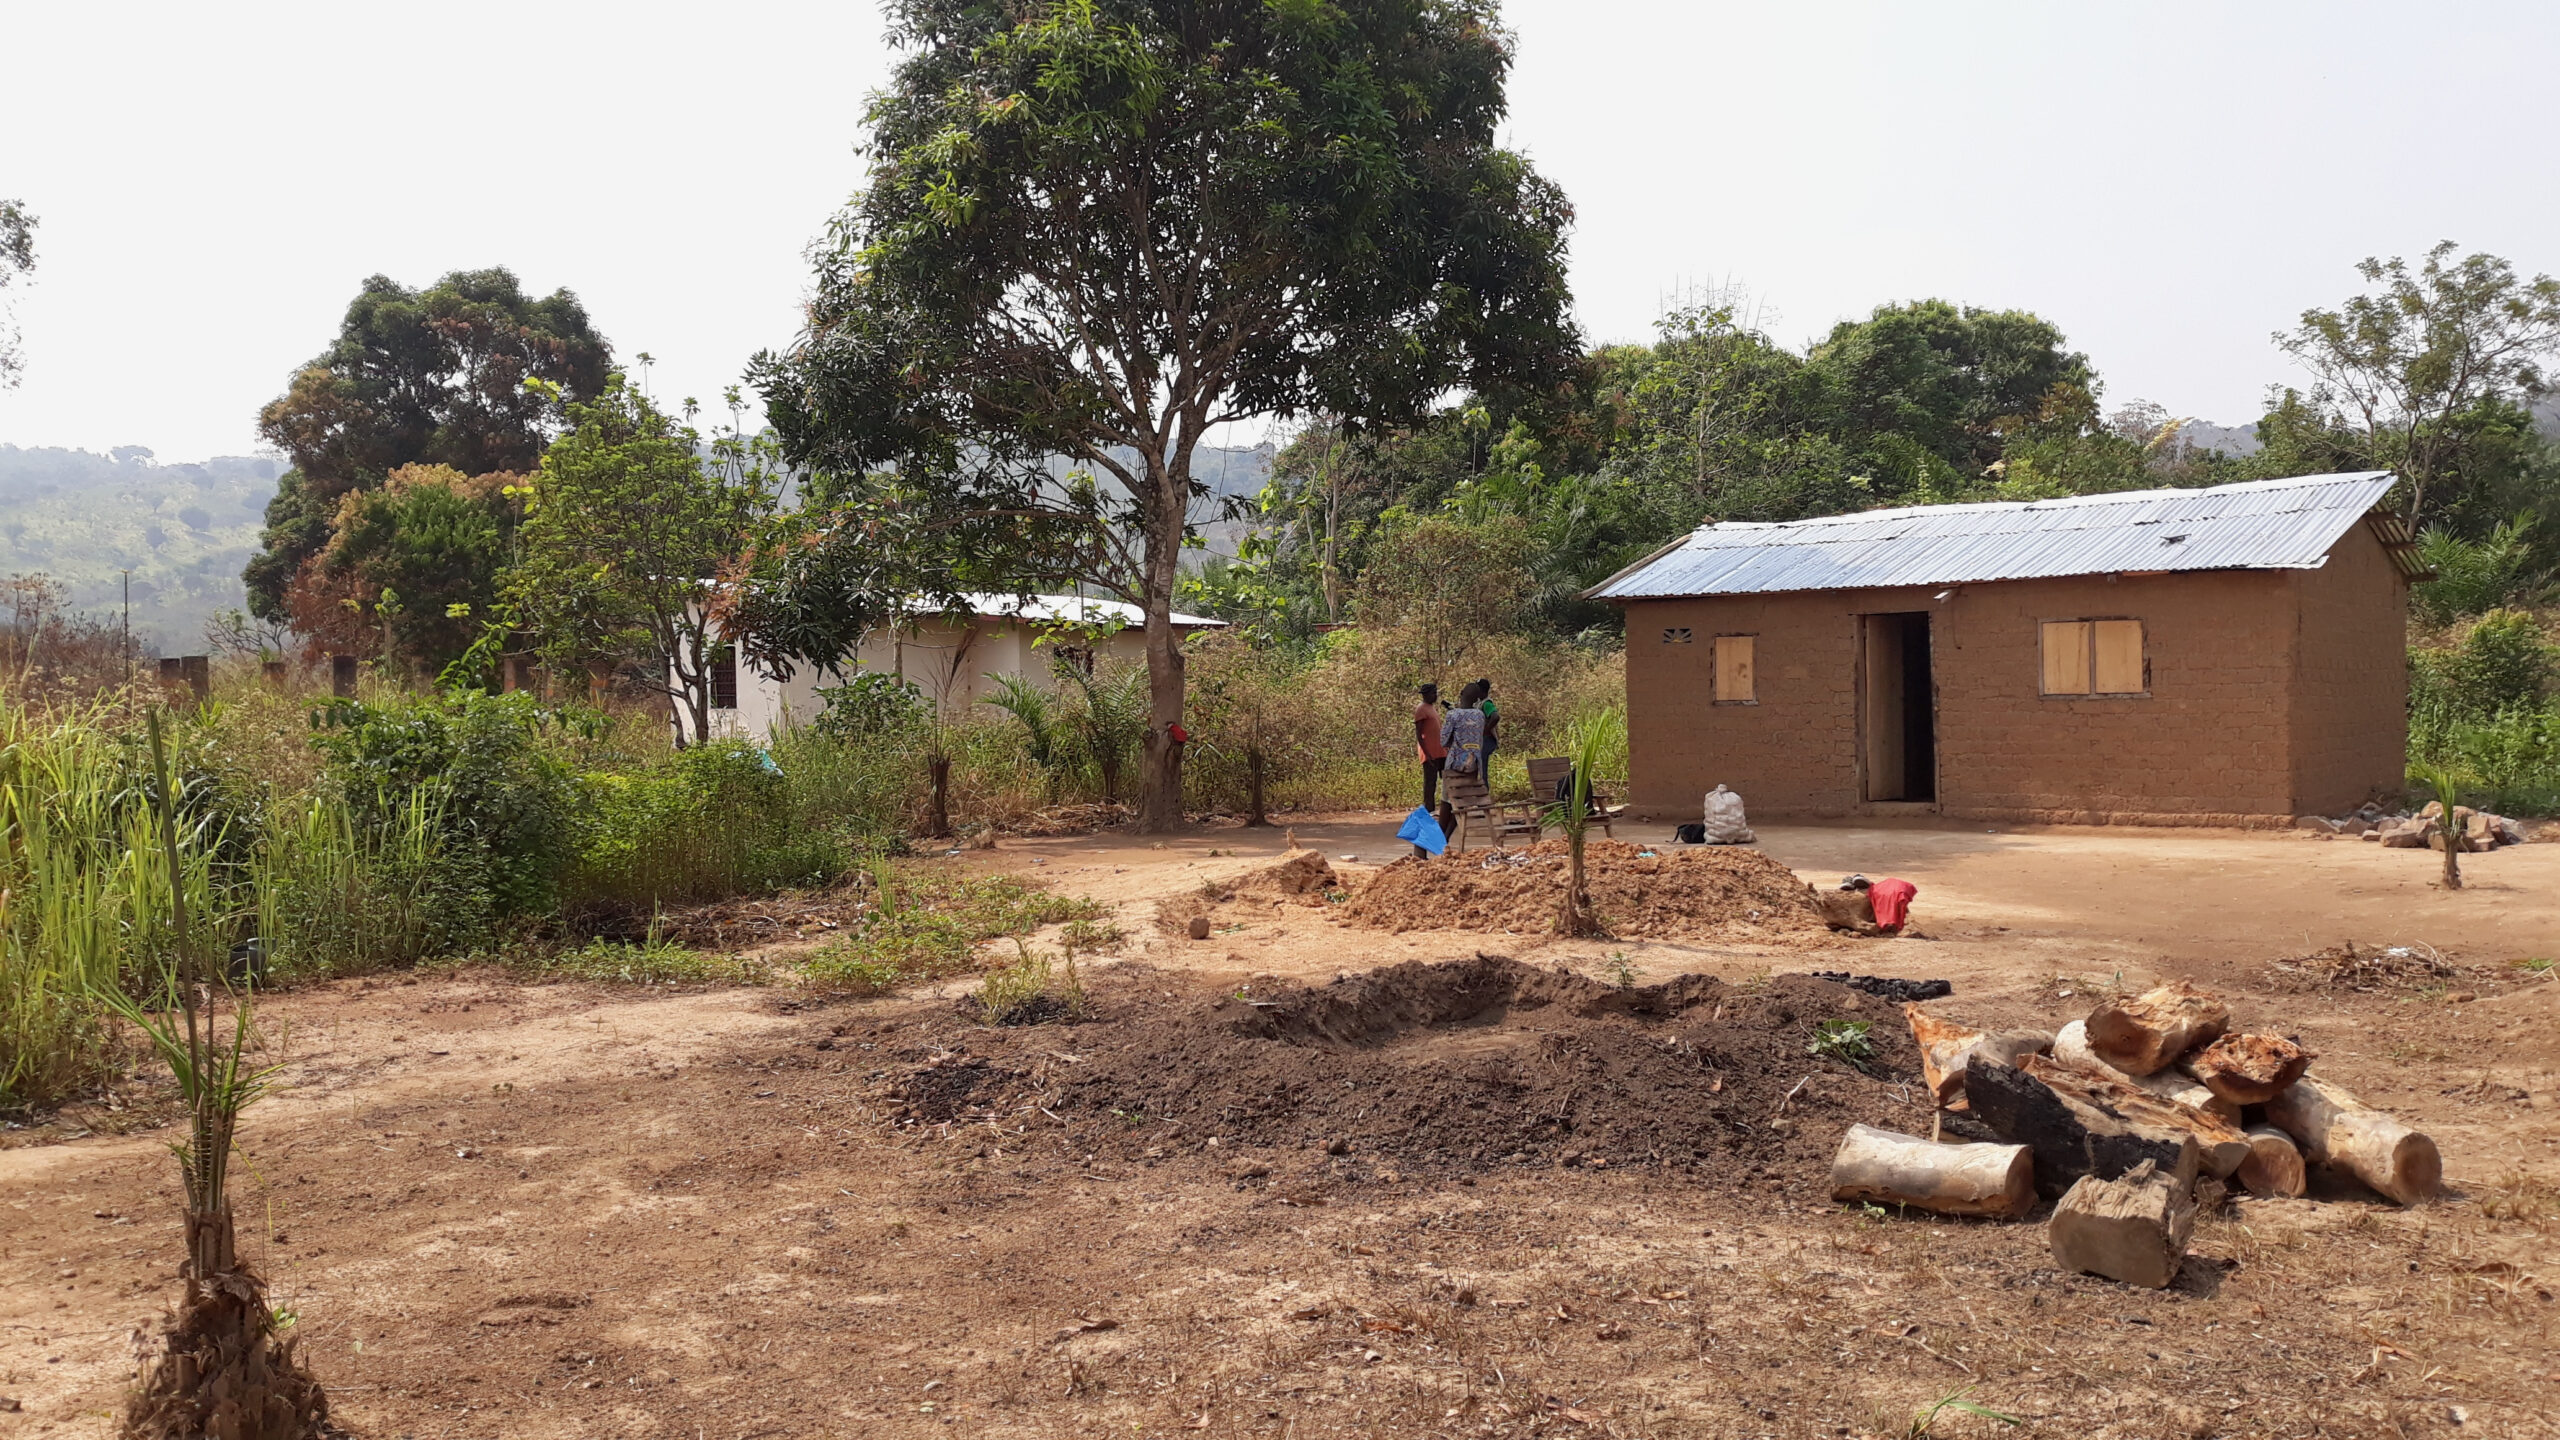 Centrafrique: timide reprise de vie à Yassara derrière la colline de Bas-Oubangui après les opérations de ratissage menées par les FACA